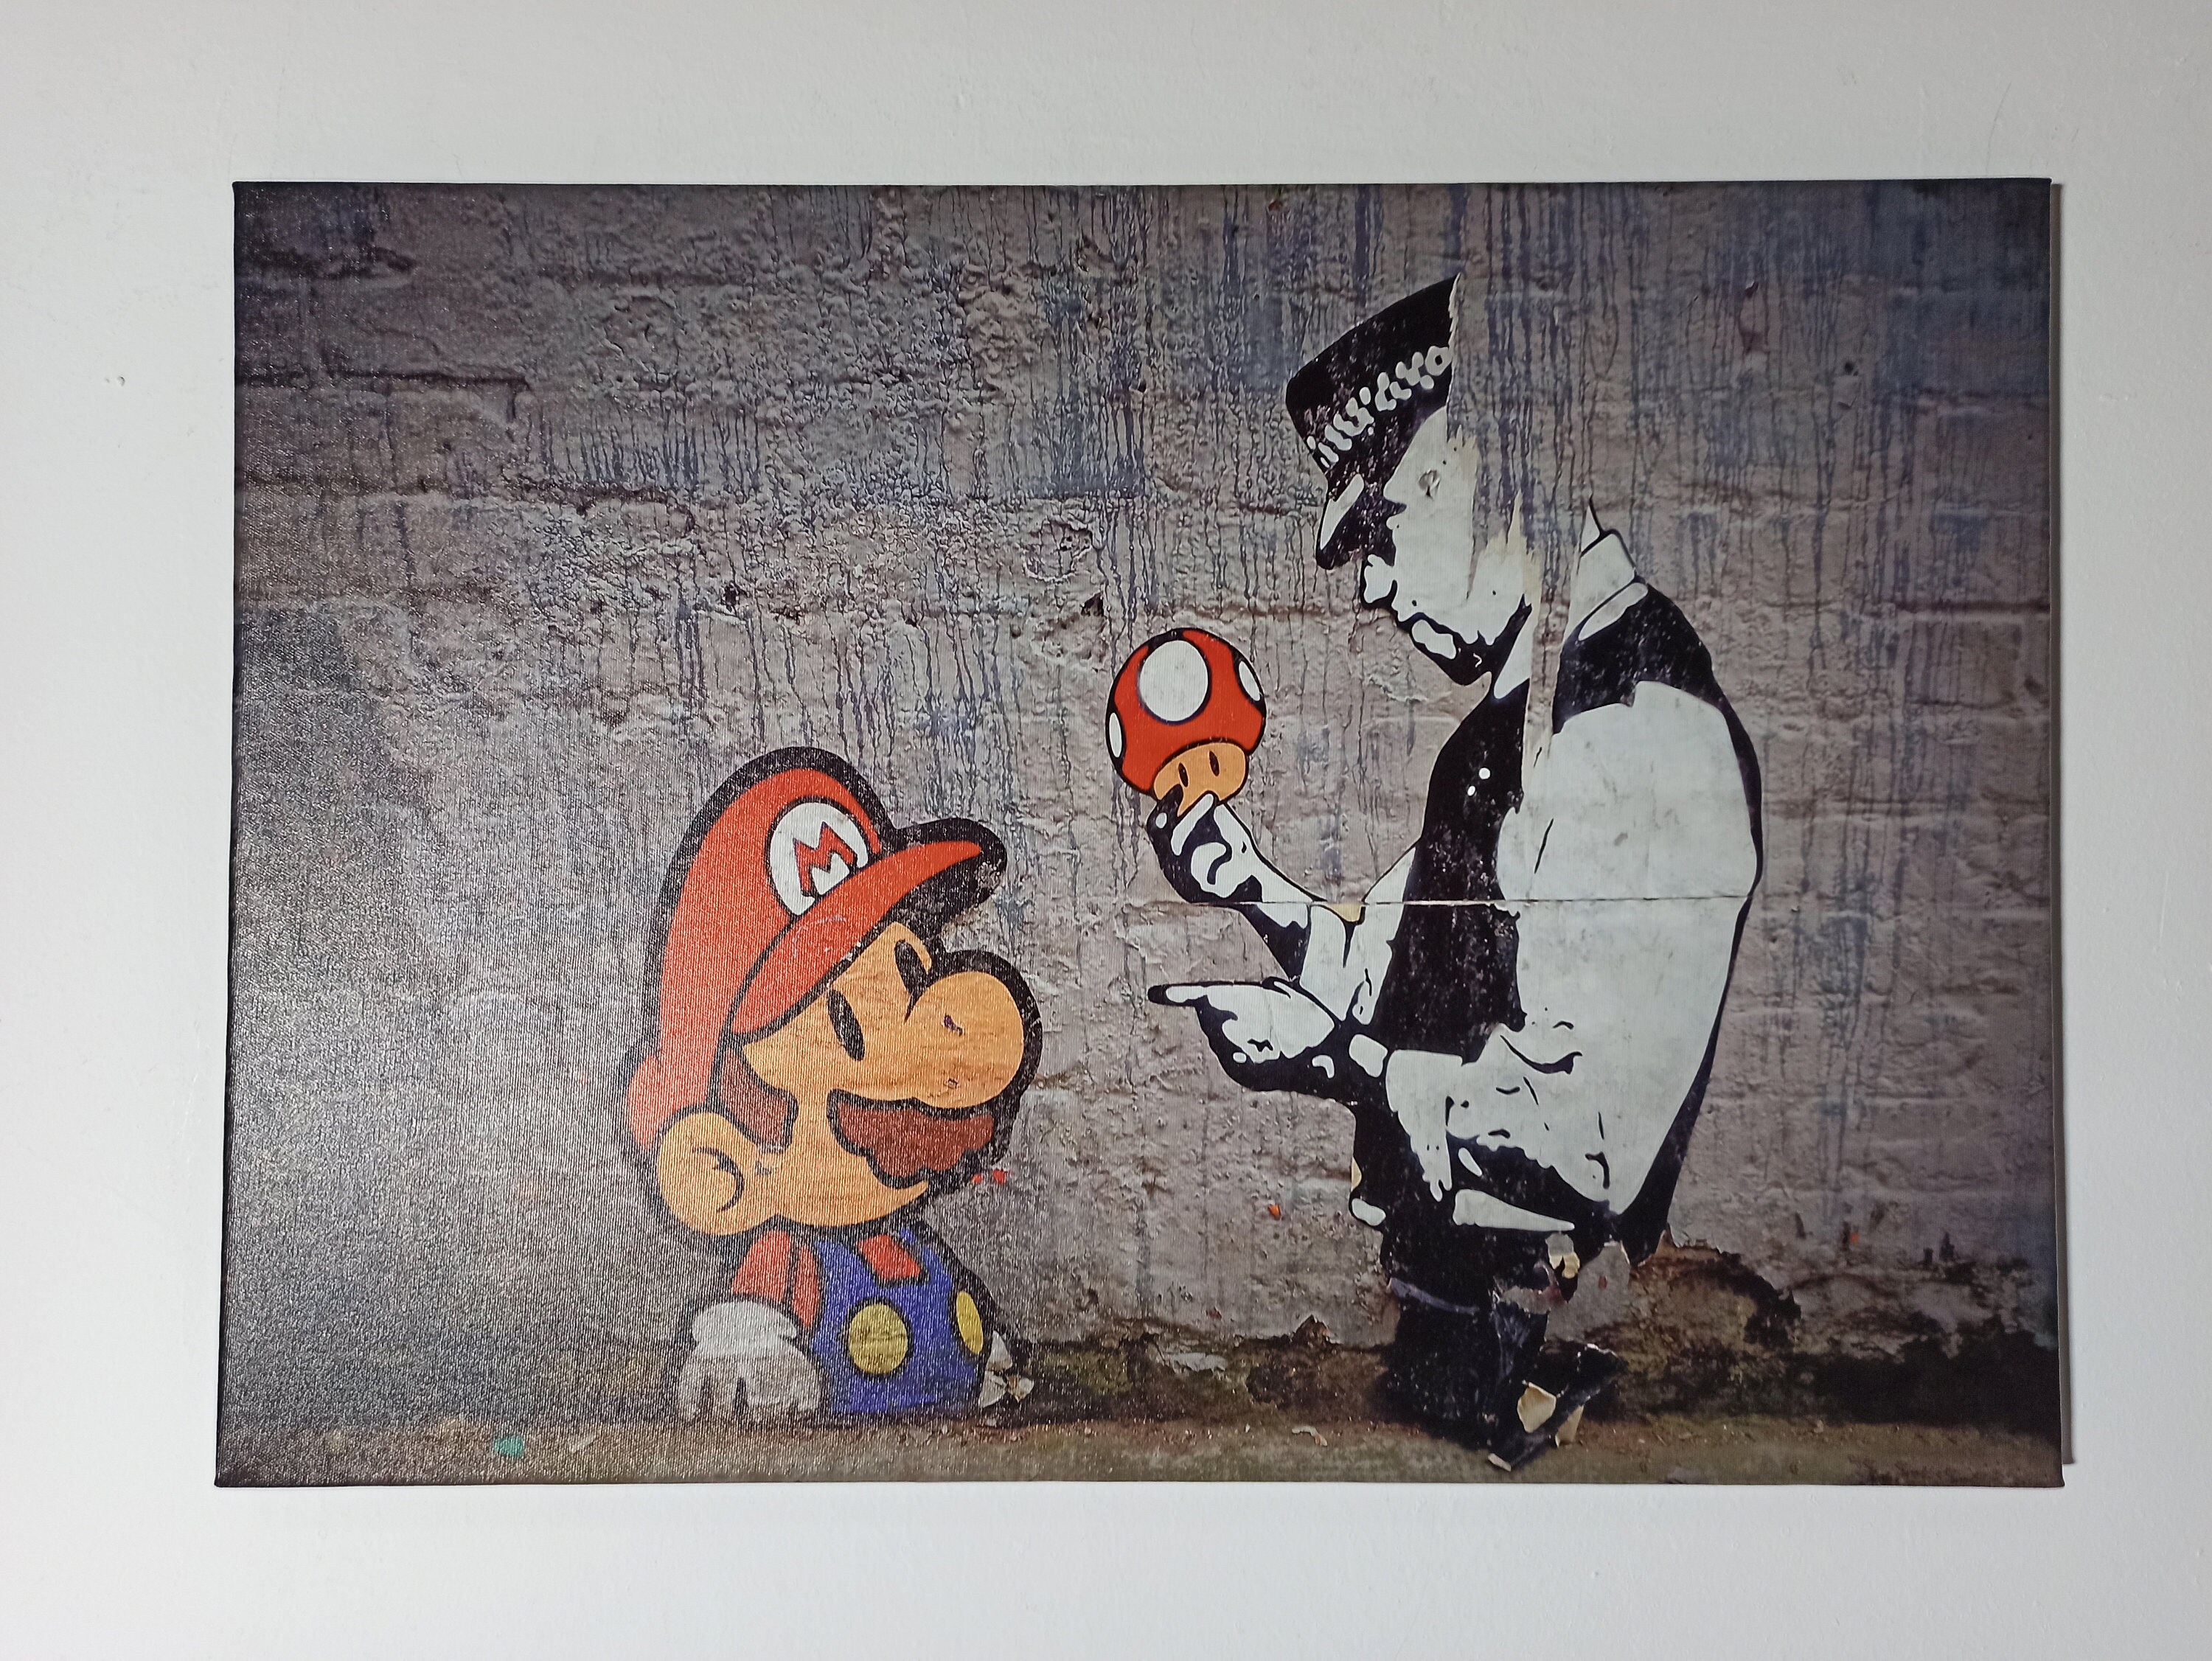 Poster Panorama Graffiti Banksy Super Mario Bros 30x21 cm